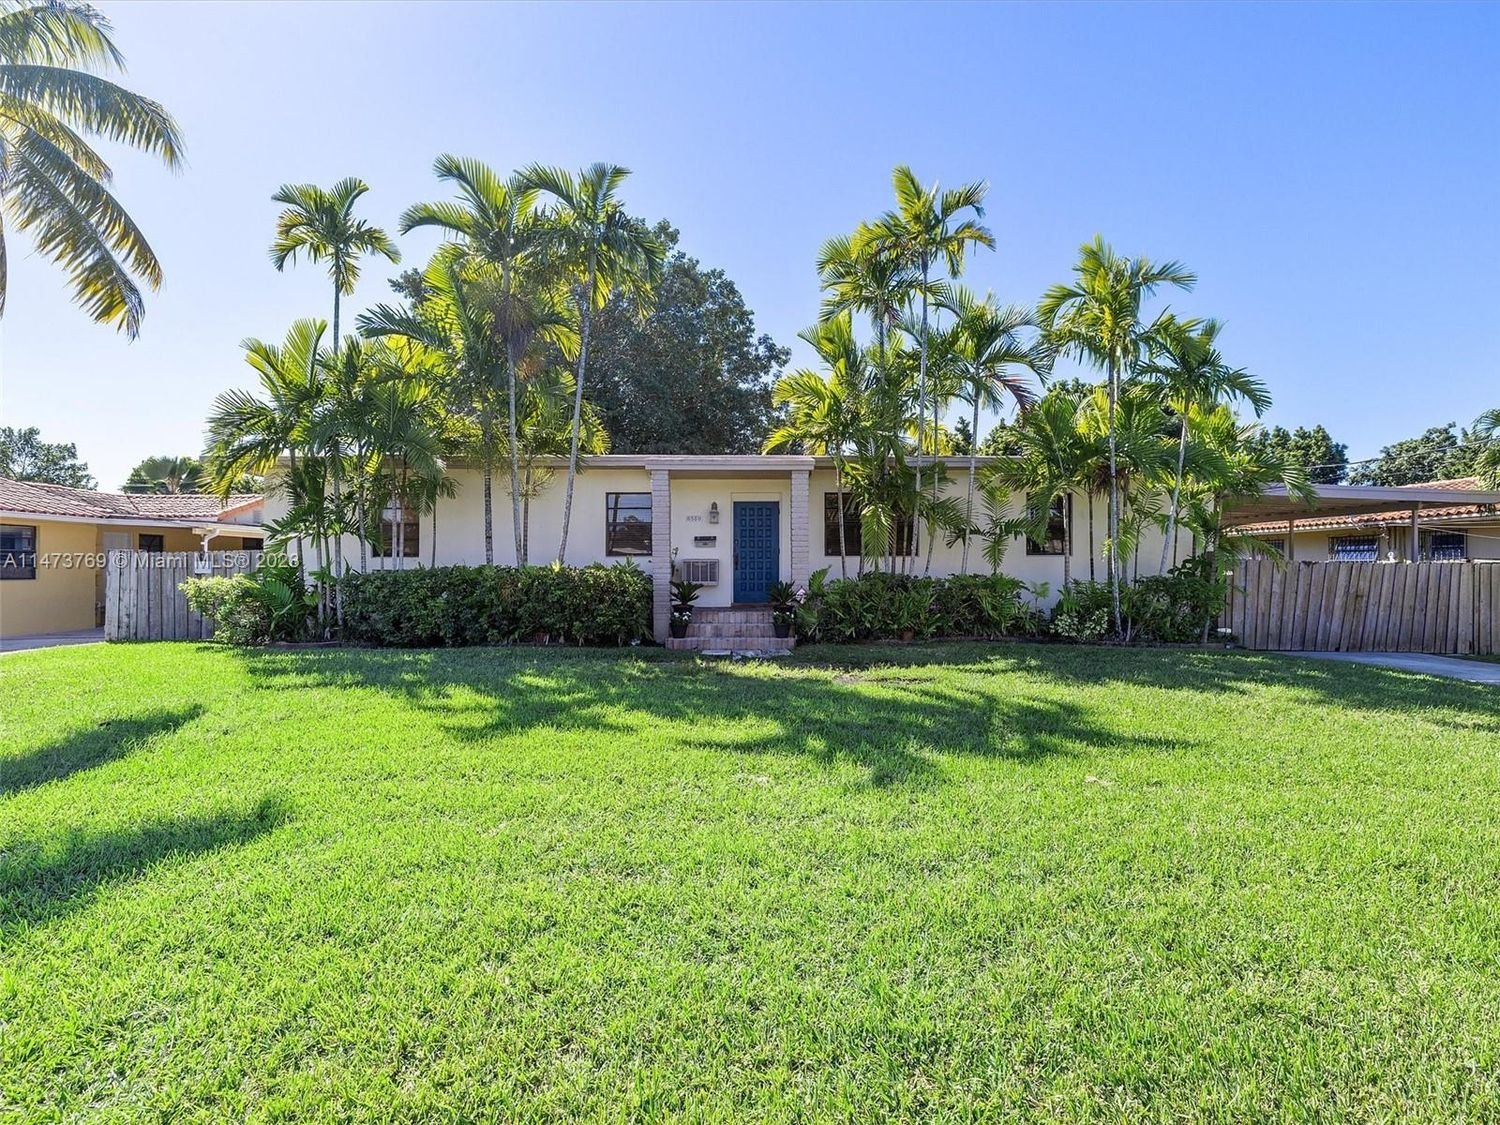 Real estate property located at 6550 27th St, Miami-Dade County, CORAL VILLAS REV, Miami, FL